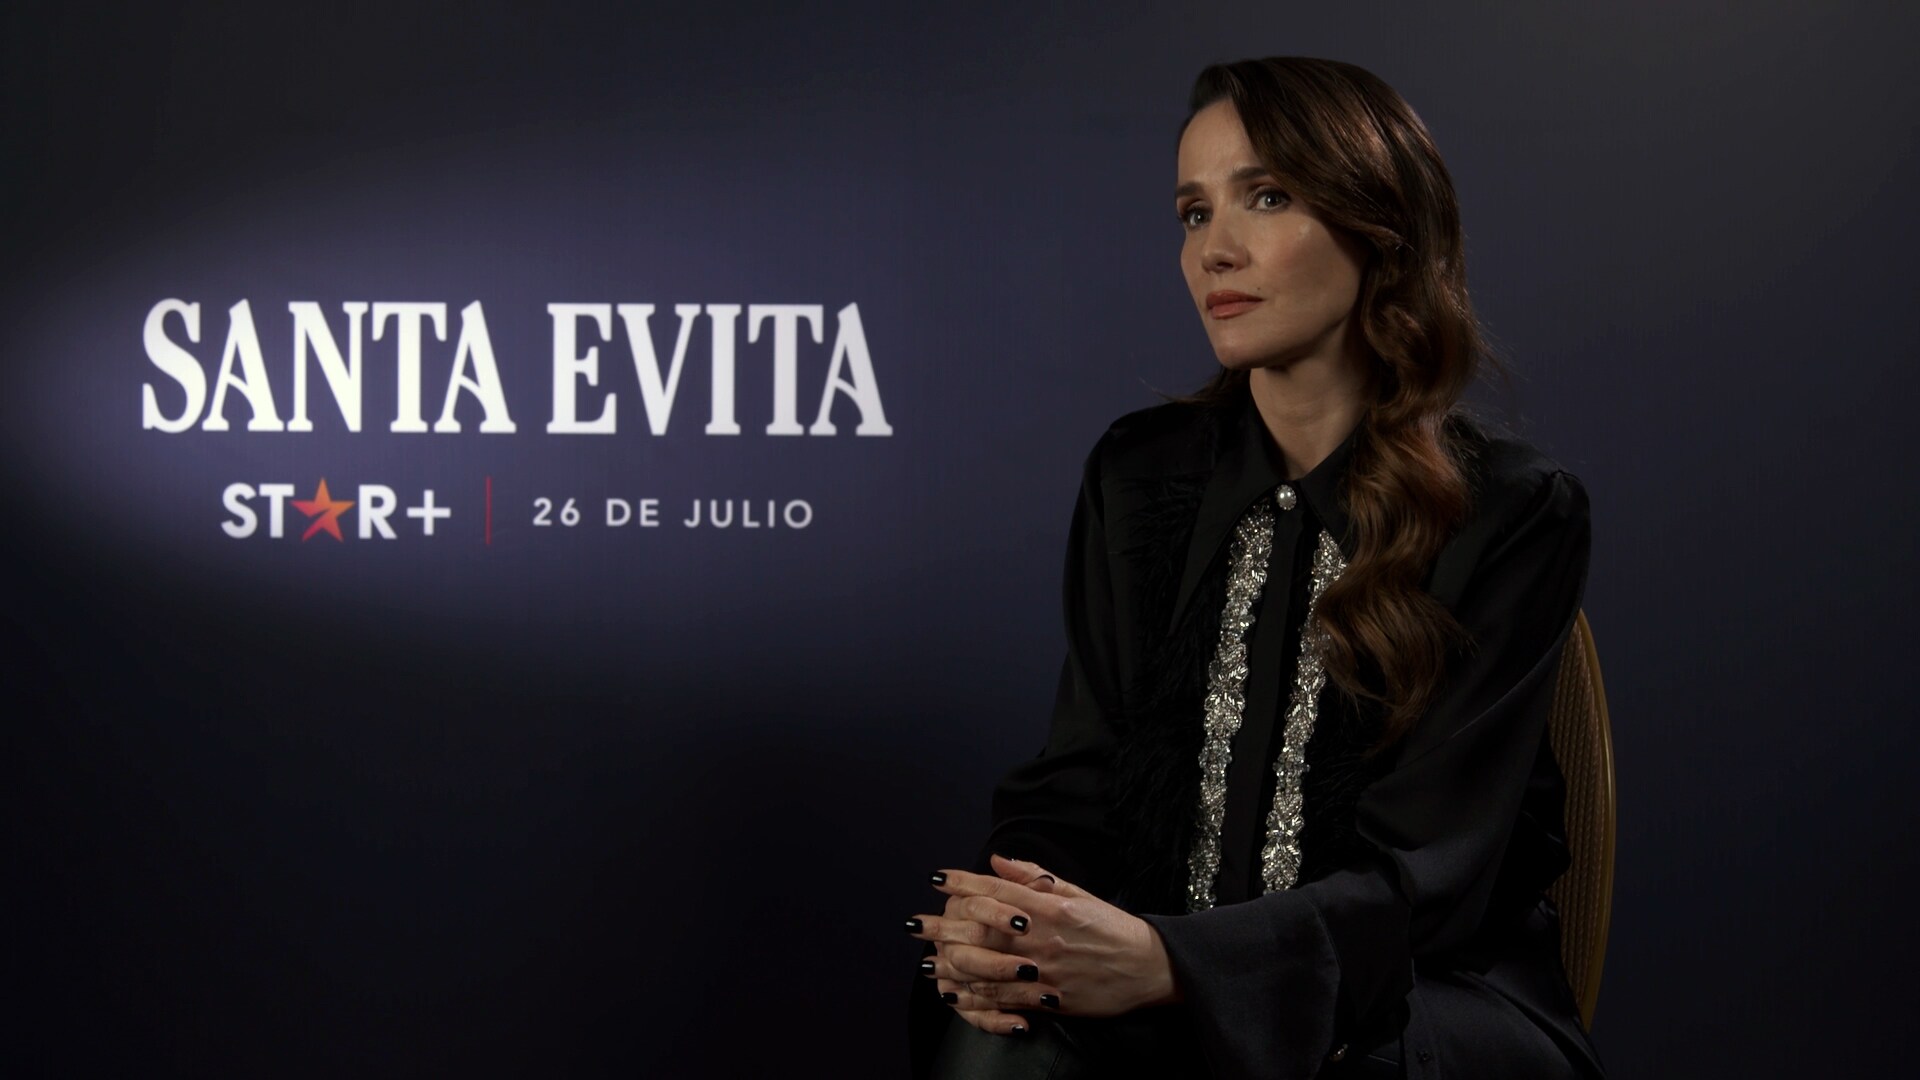 Santa Evita | Eva Perón: Natalia Oreiro reflexiona sobre su aprendizaje tras el rodaje | Star+